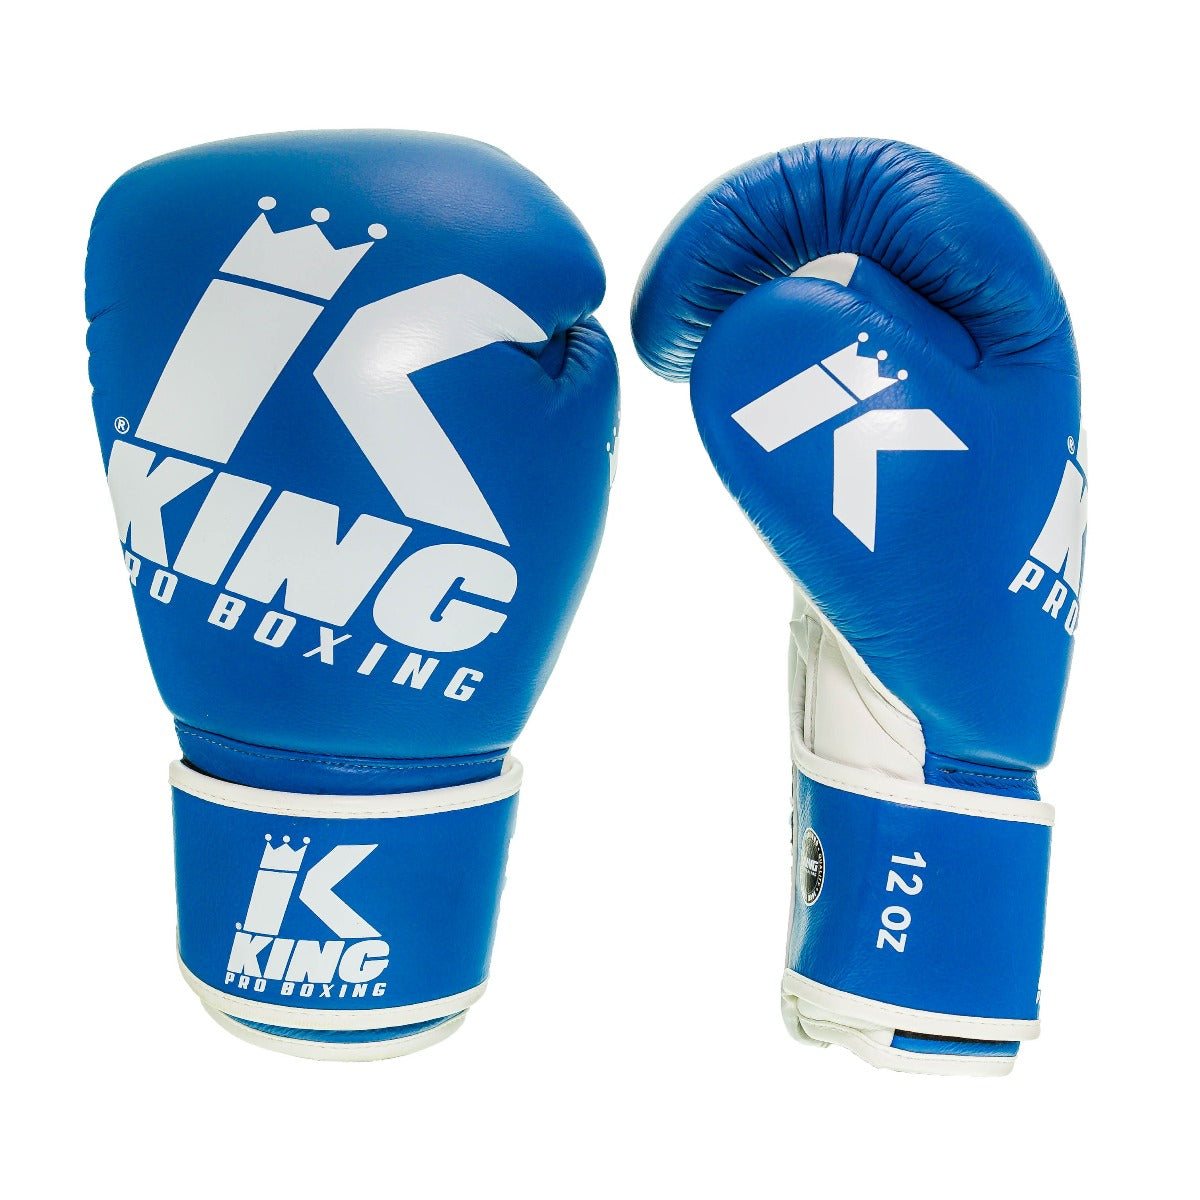 Gants de boxe King PRO boxing - BG PLATINUM 2